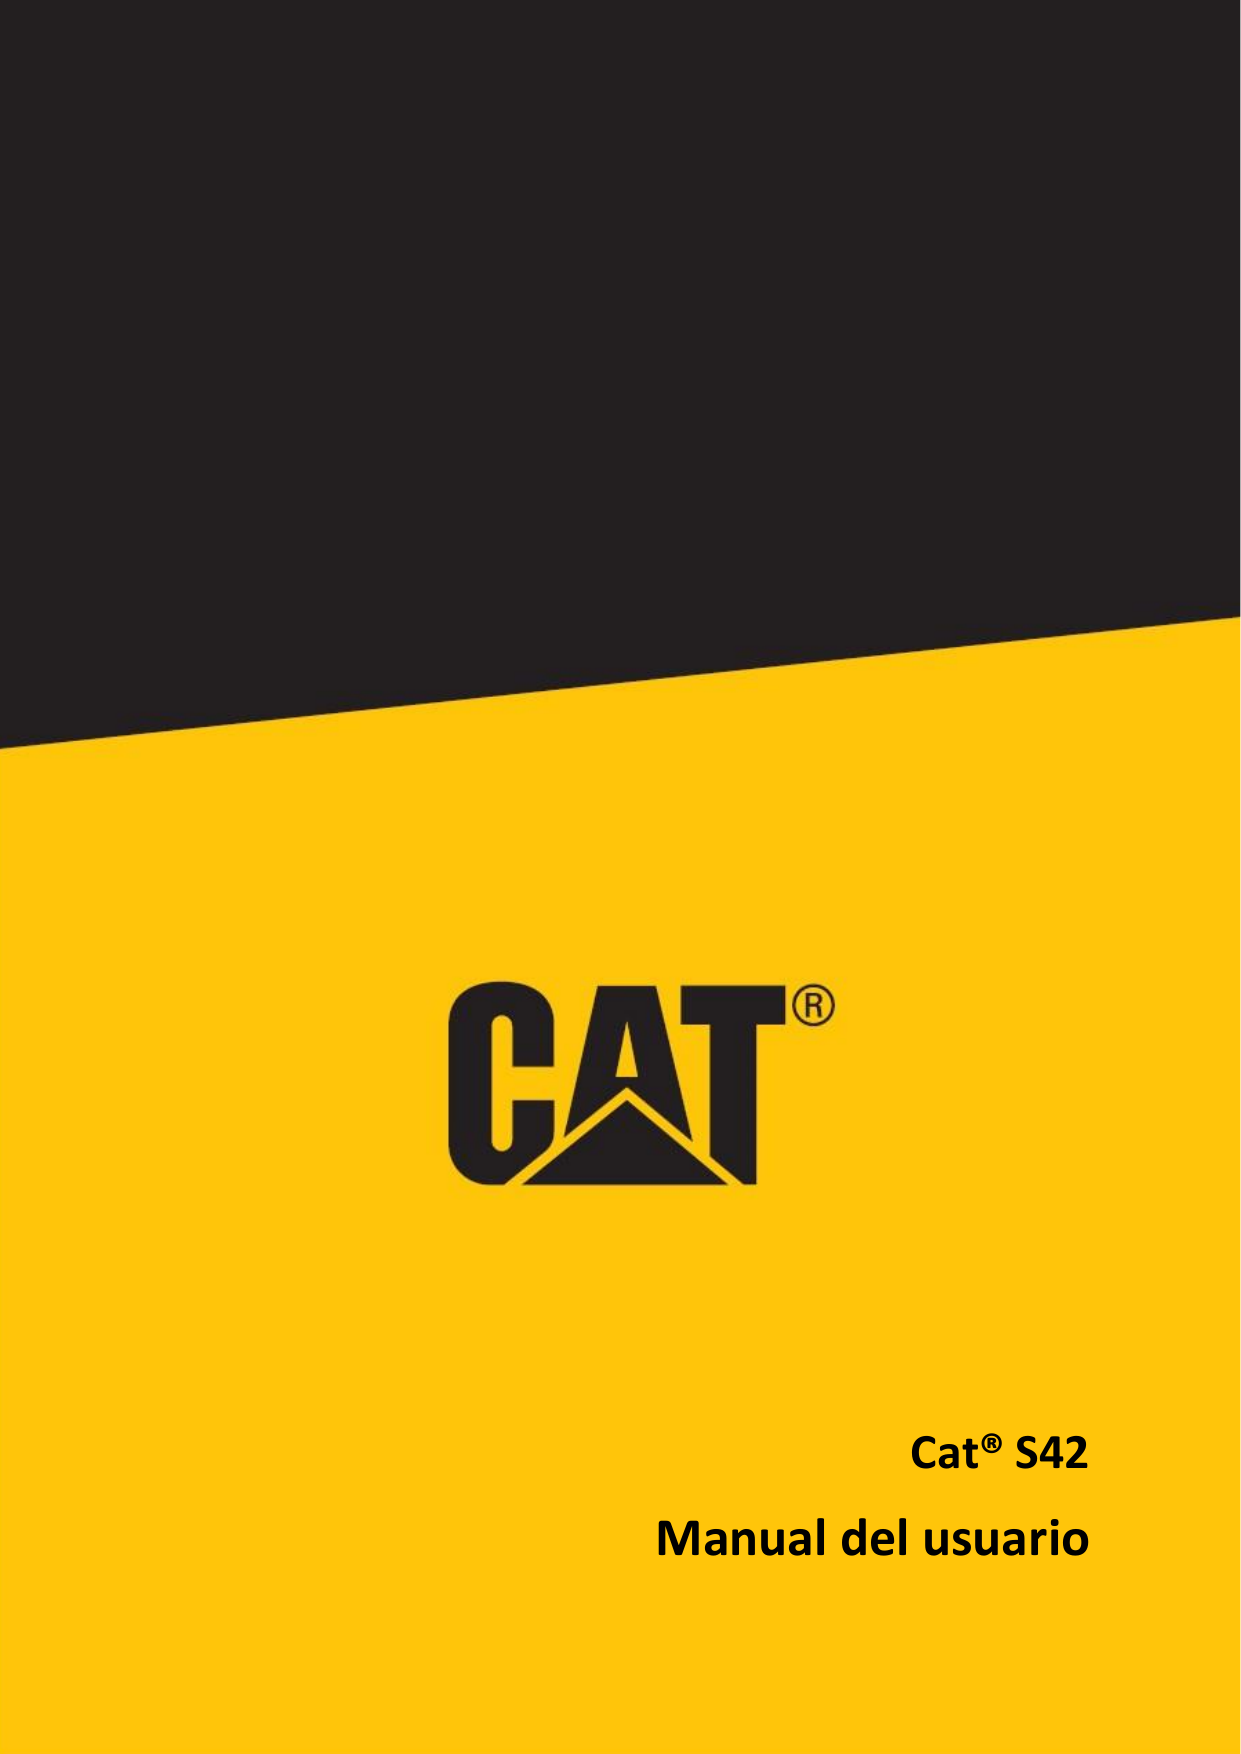 Cat® S42Manual del usuario1